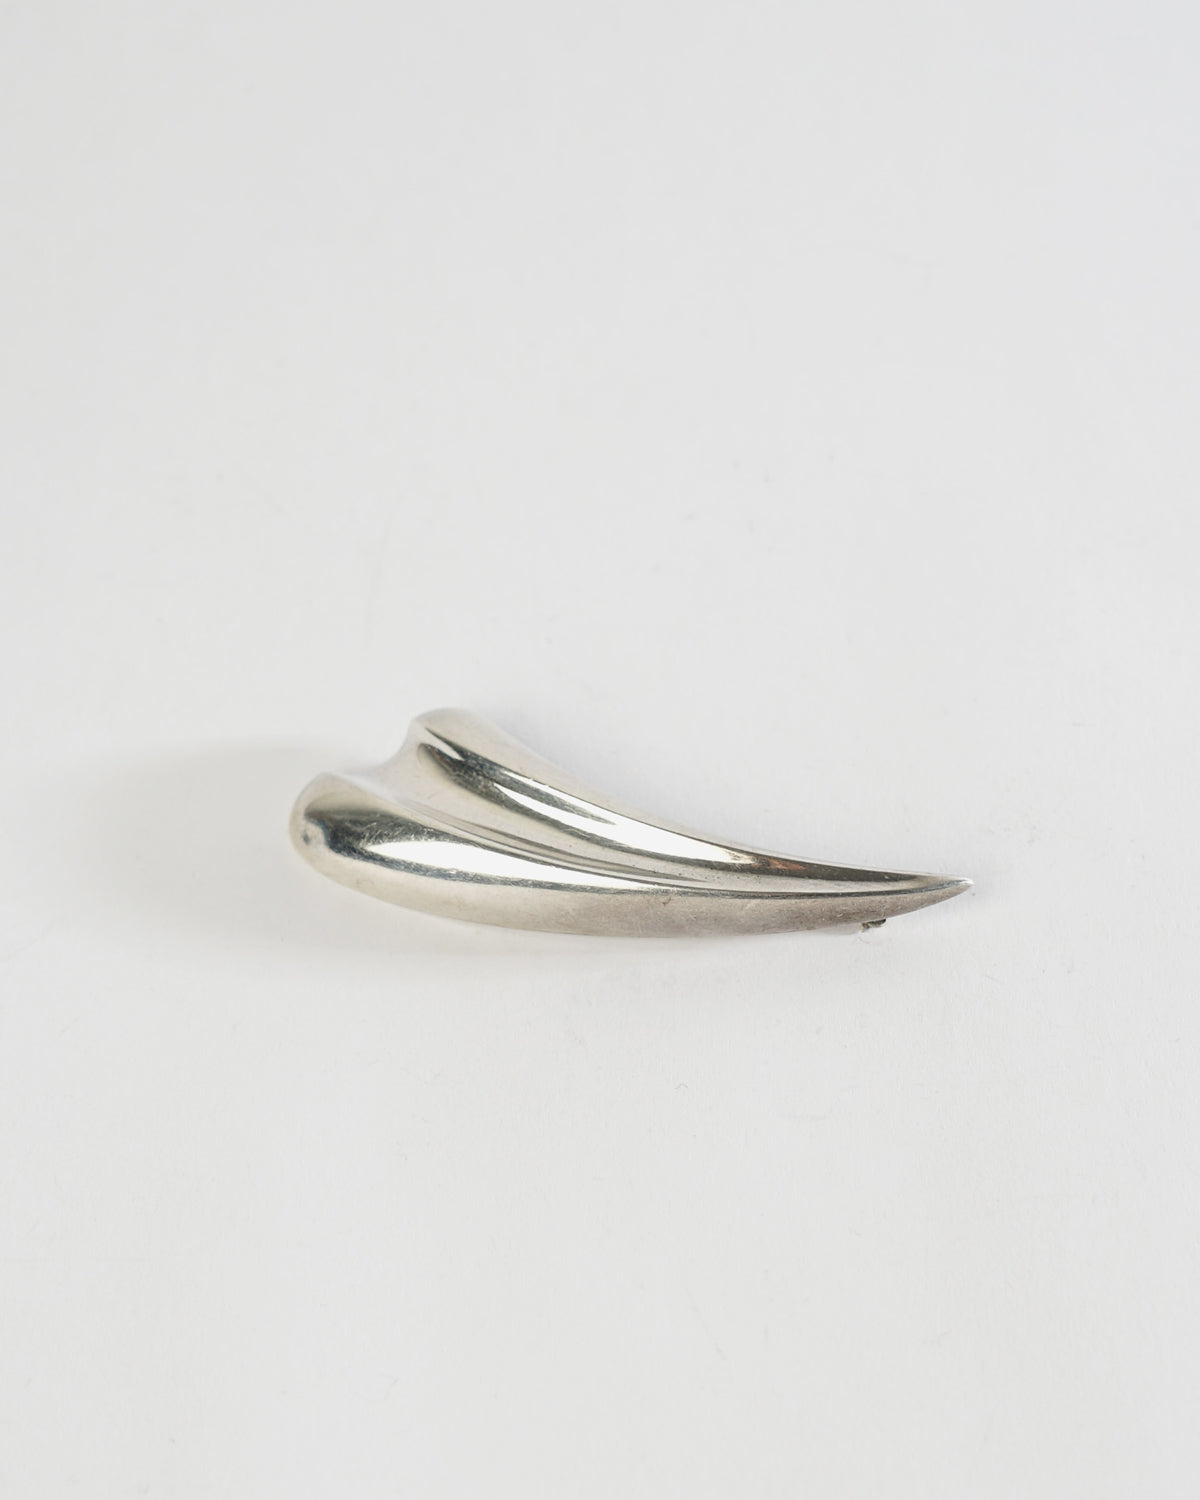 Silver Brooch / Pin